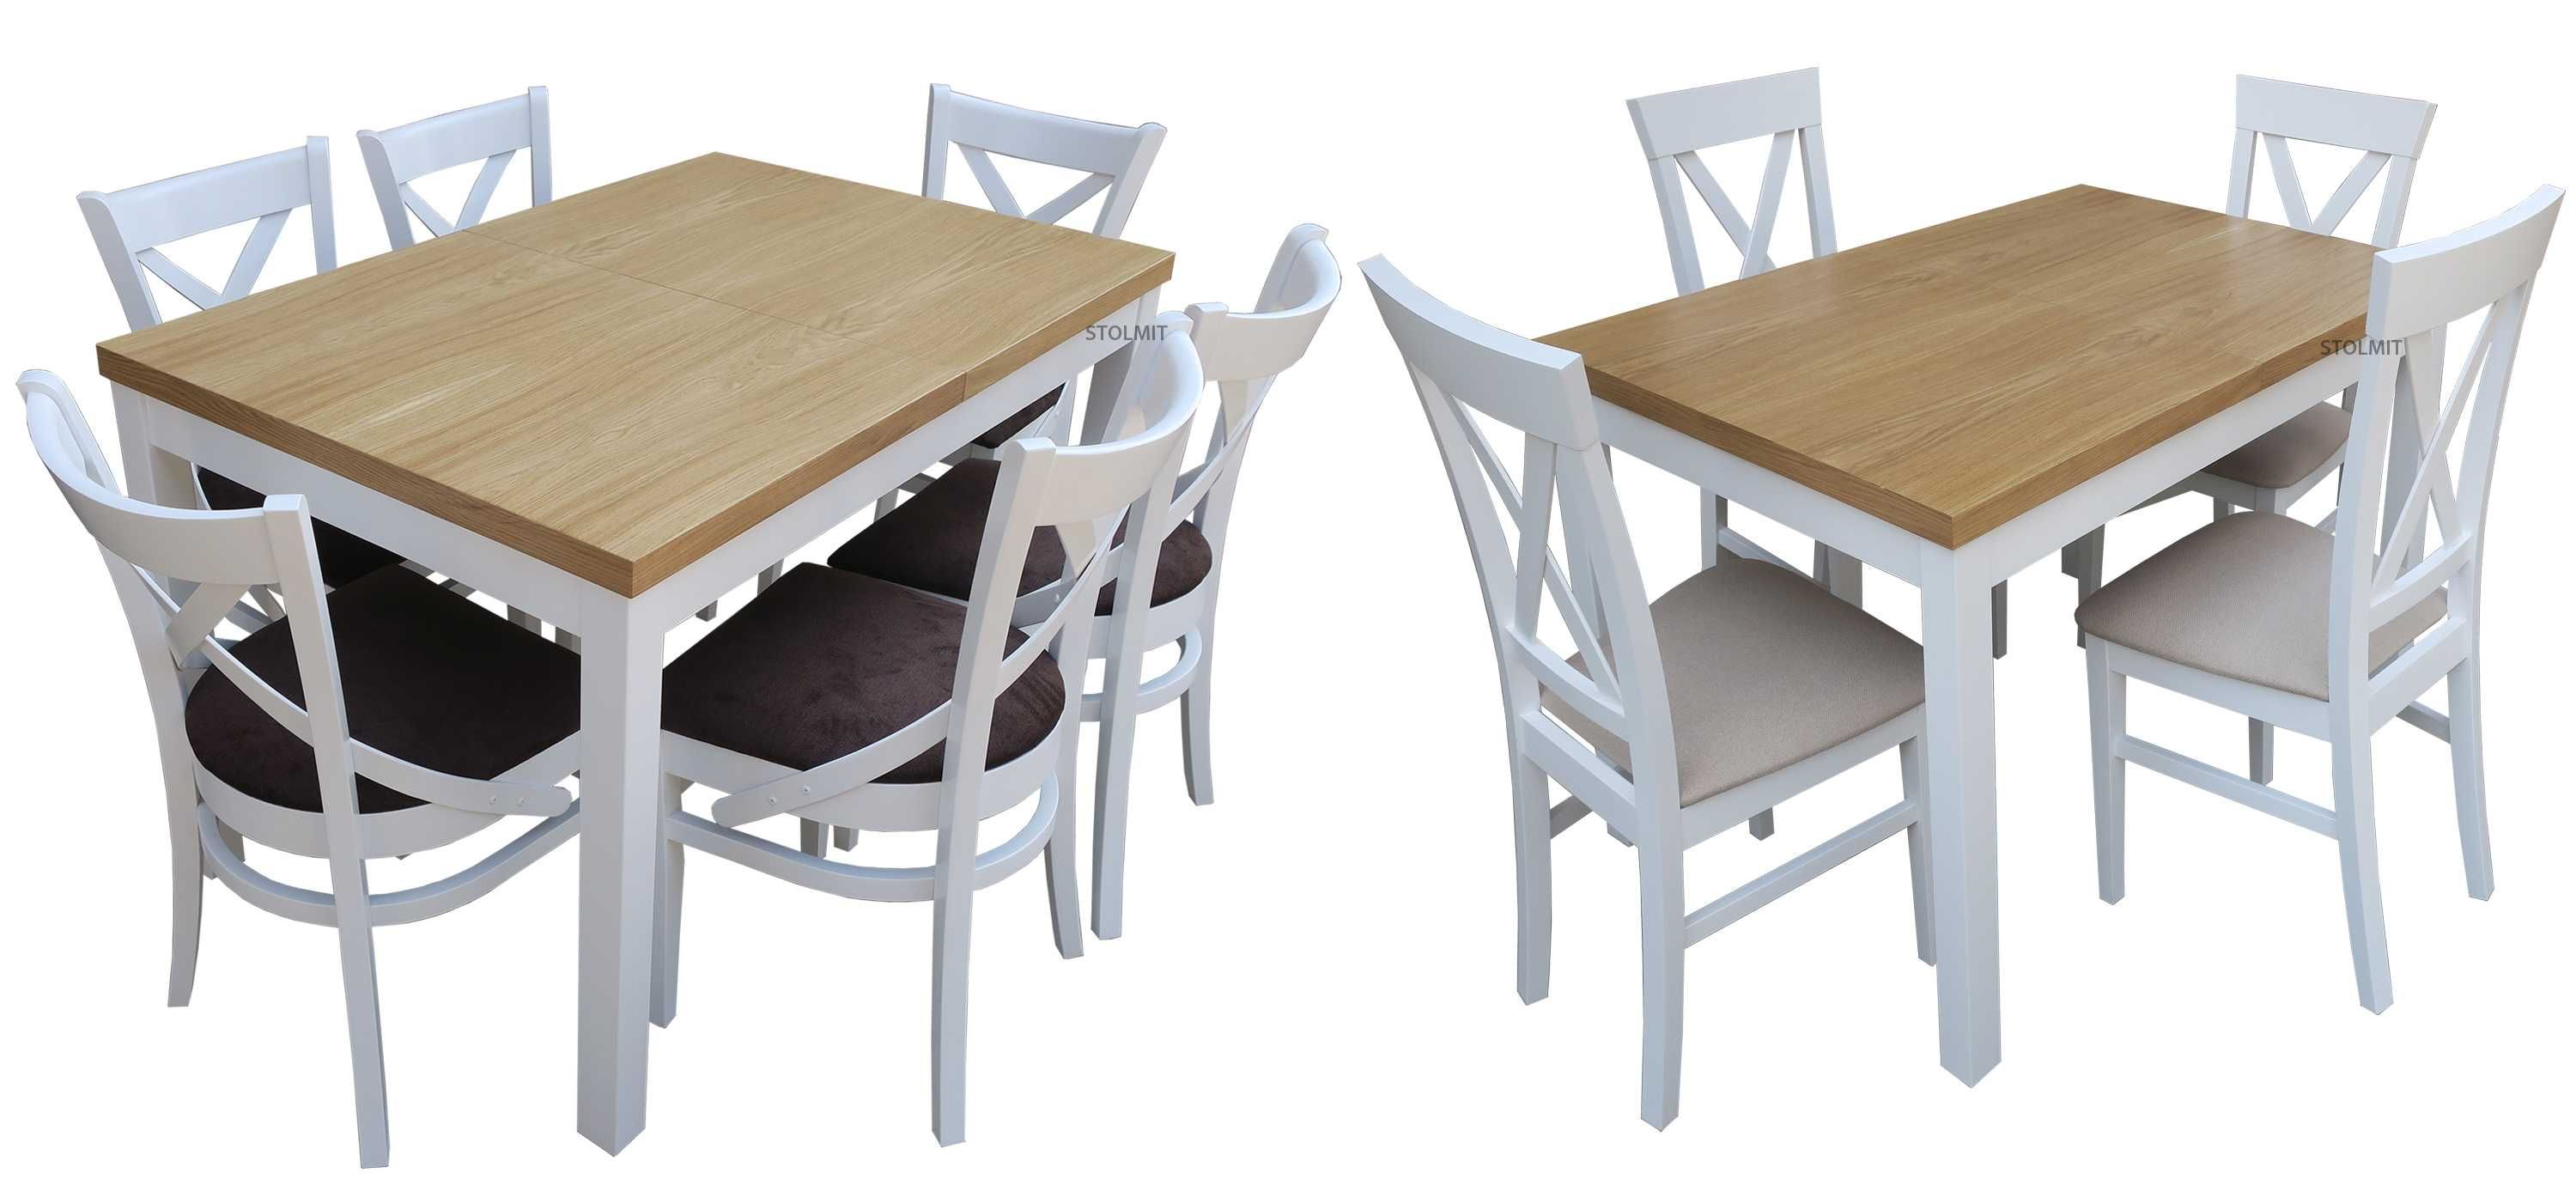 Dębowy kwardatowy stół rozkładany z dwoma wkładami + 4 krzesła Kraków